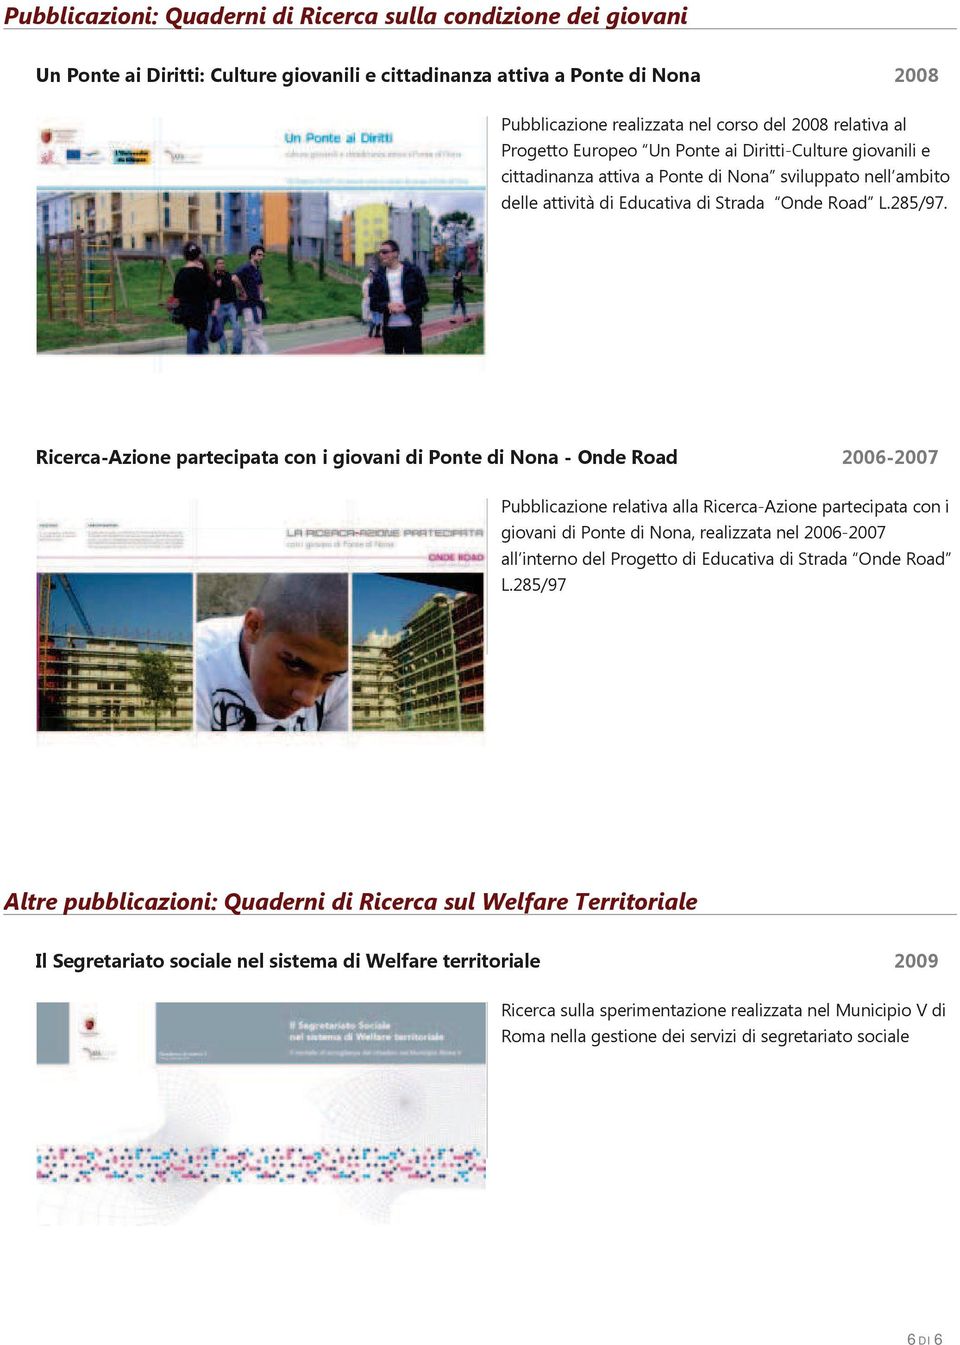 Ricerca-Azione partecipata con i giovani di Ponte di Nona - Onde Road 2006-2007 Pubblicazione relativa alla Ricerca-Azione partecipata con i giovani di Ponte di Nona, realizzata nel 2006-2007 all